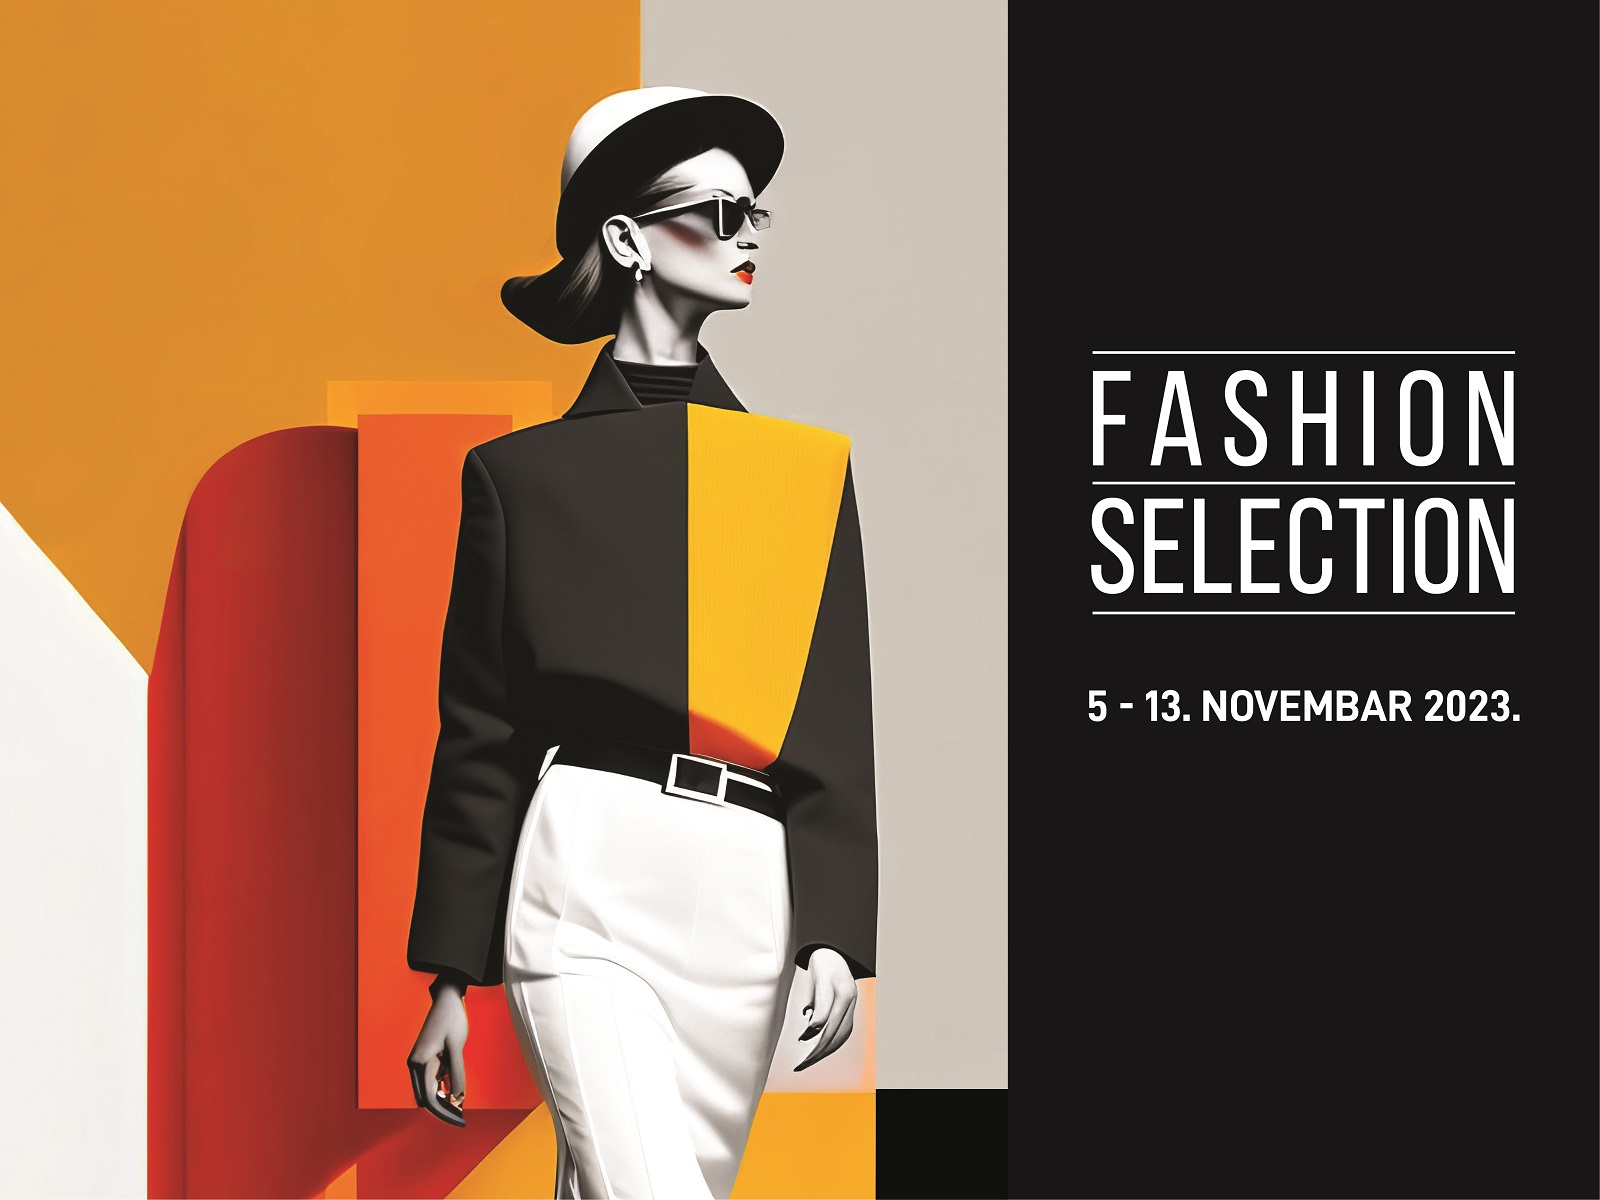 36. Fashion Selection - 5 - 13. novembar 2023.